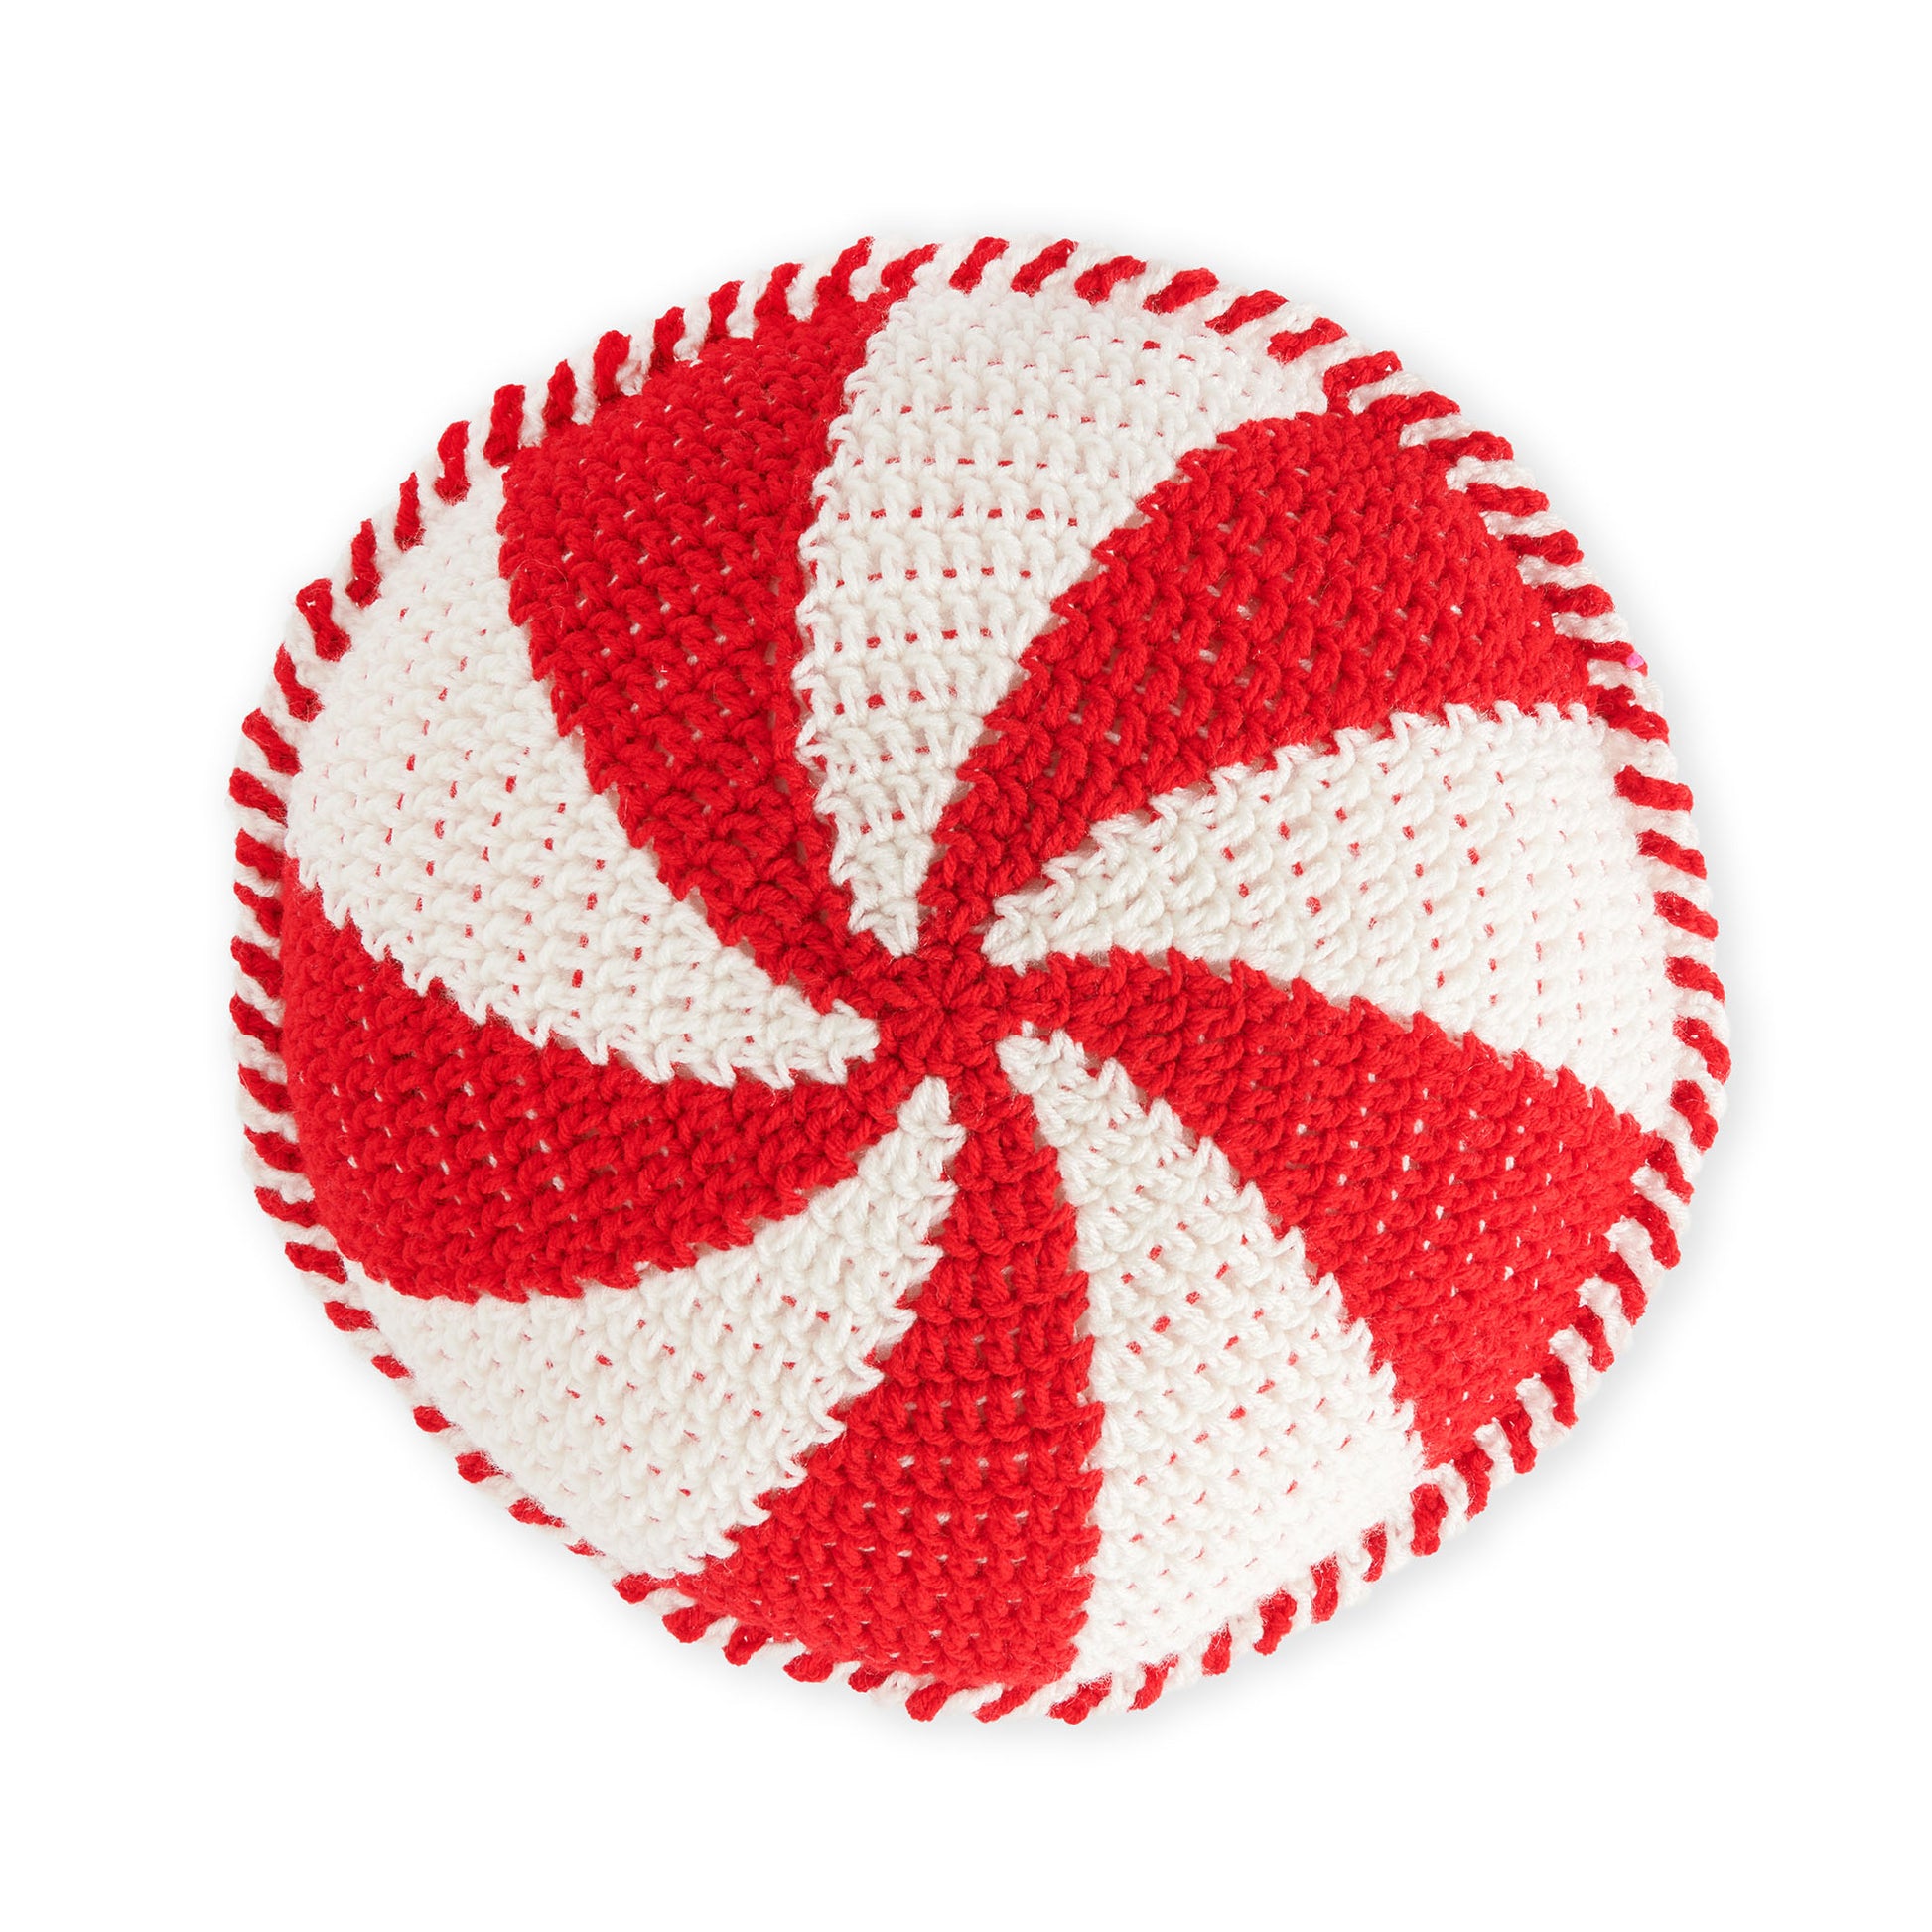 Free Red Heart Crochet Peppermint Swirl Pillow Pattern